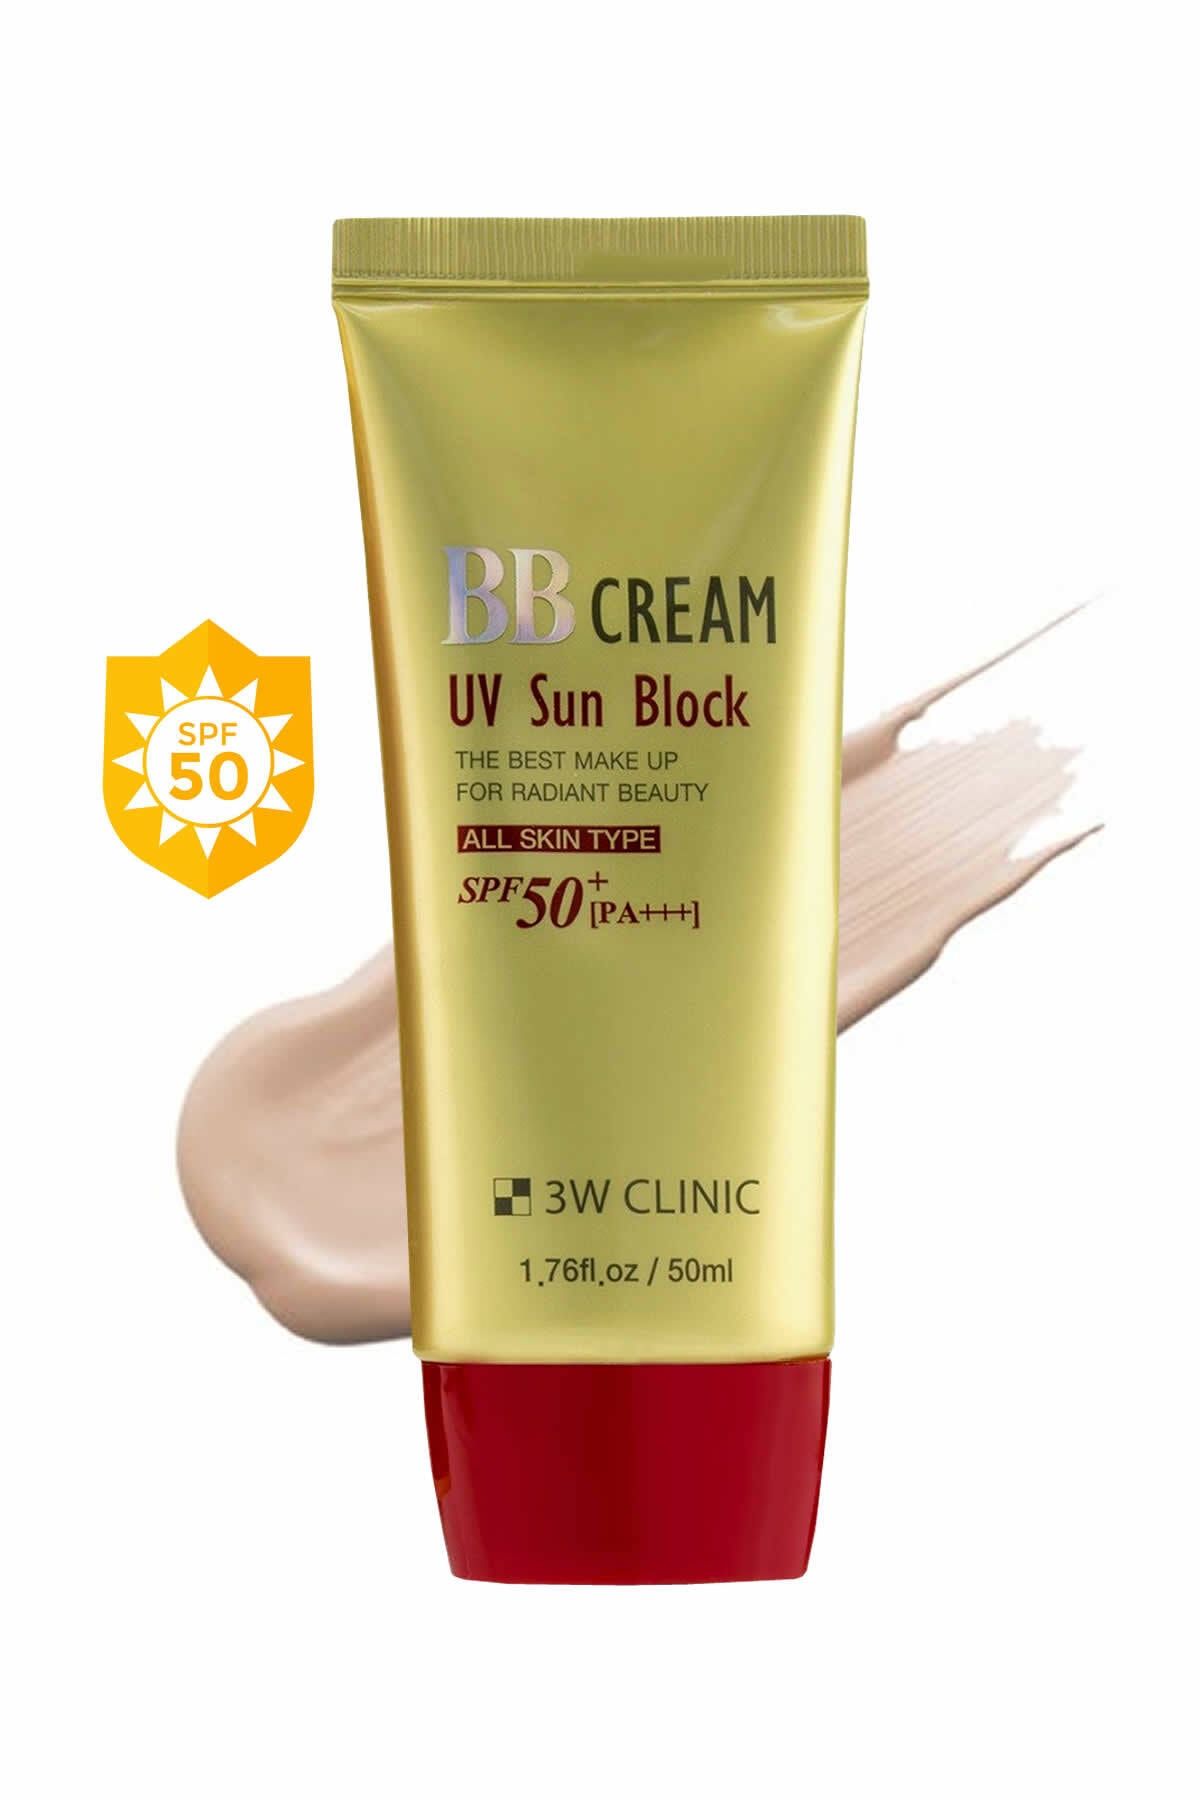 3W CLINIC Renk Eşitleyici Ve Spf 50 Pa +++ Güneş Koruyucu Açık Renk Bb Krem Bb Cream Uv Sun Block